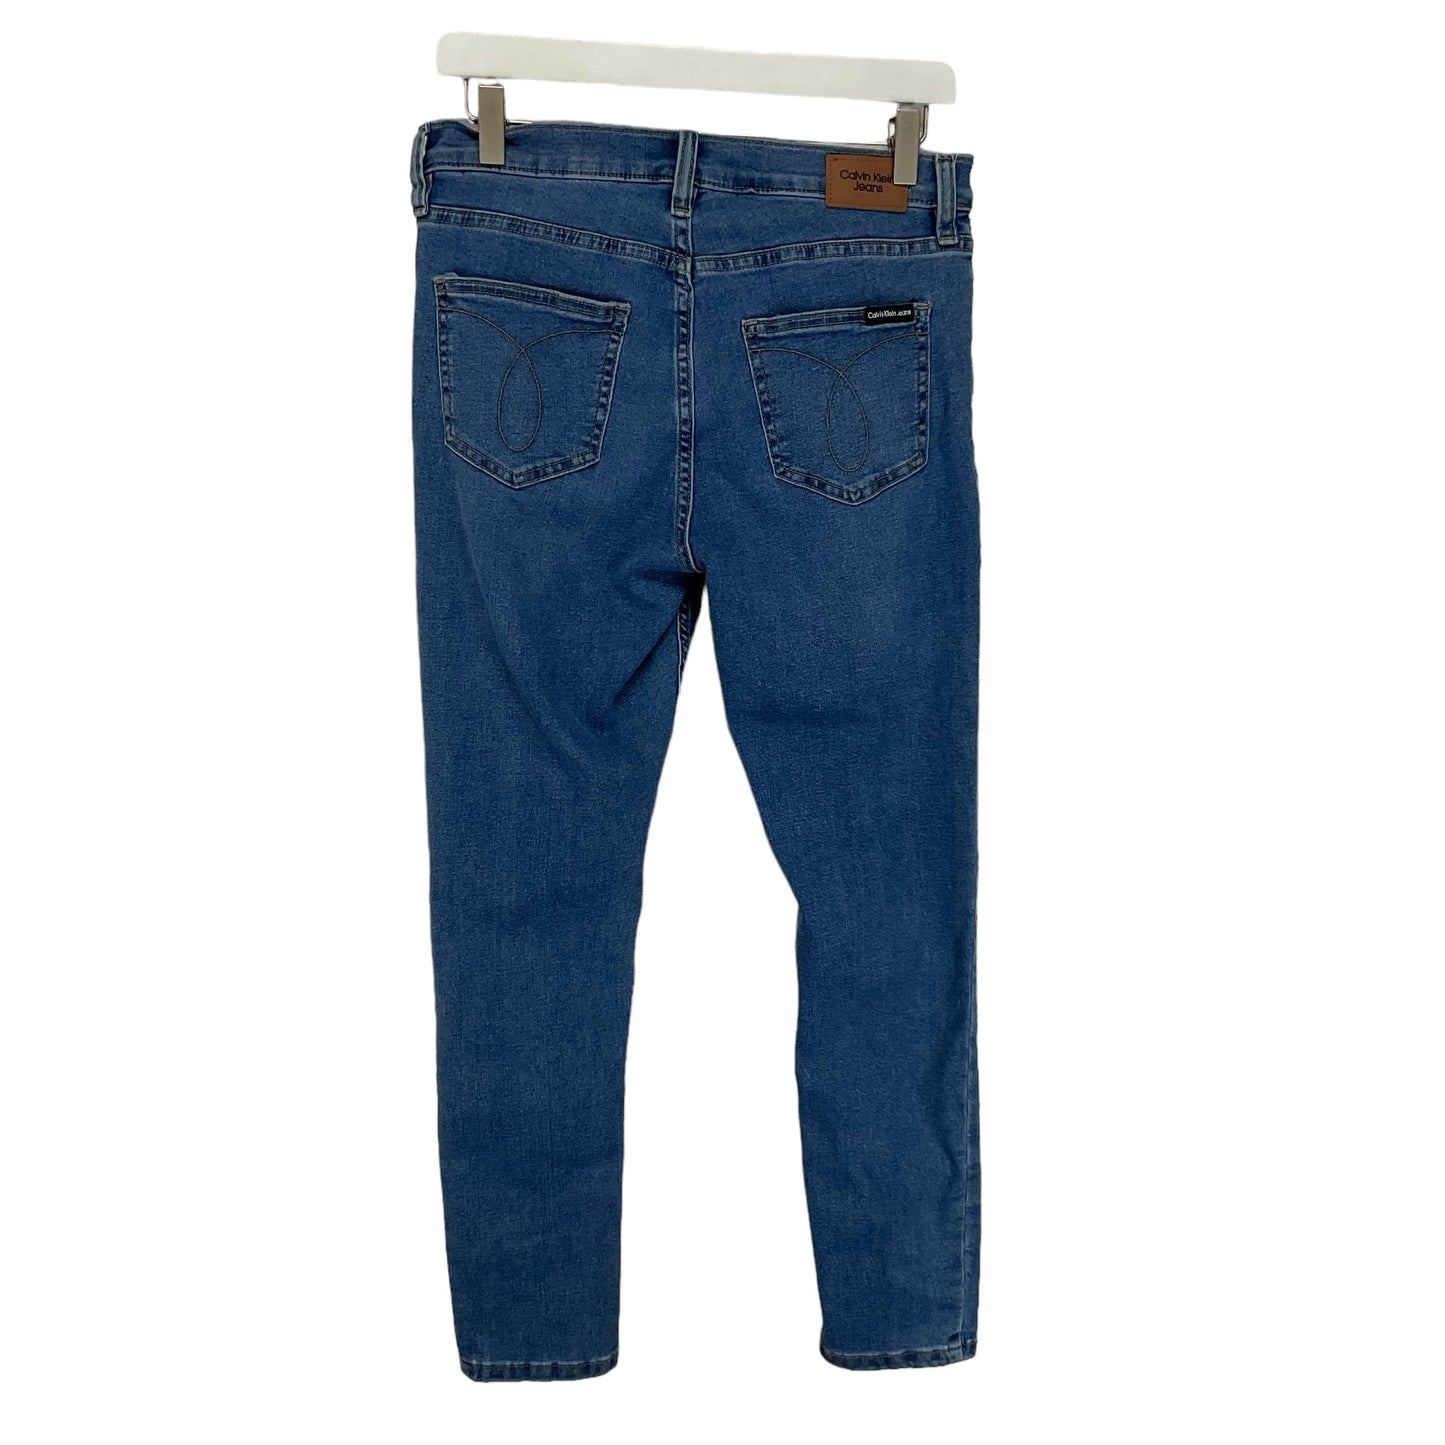 Blue Denim Jeans Straight Calvin Klein, Size 8